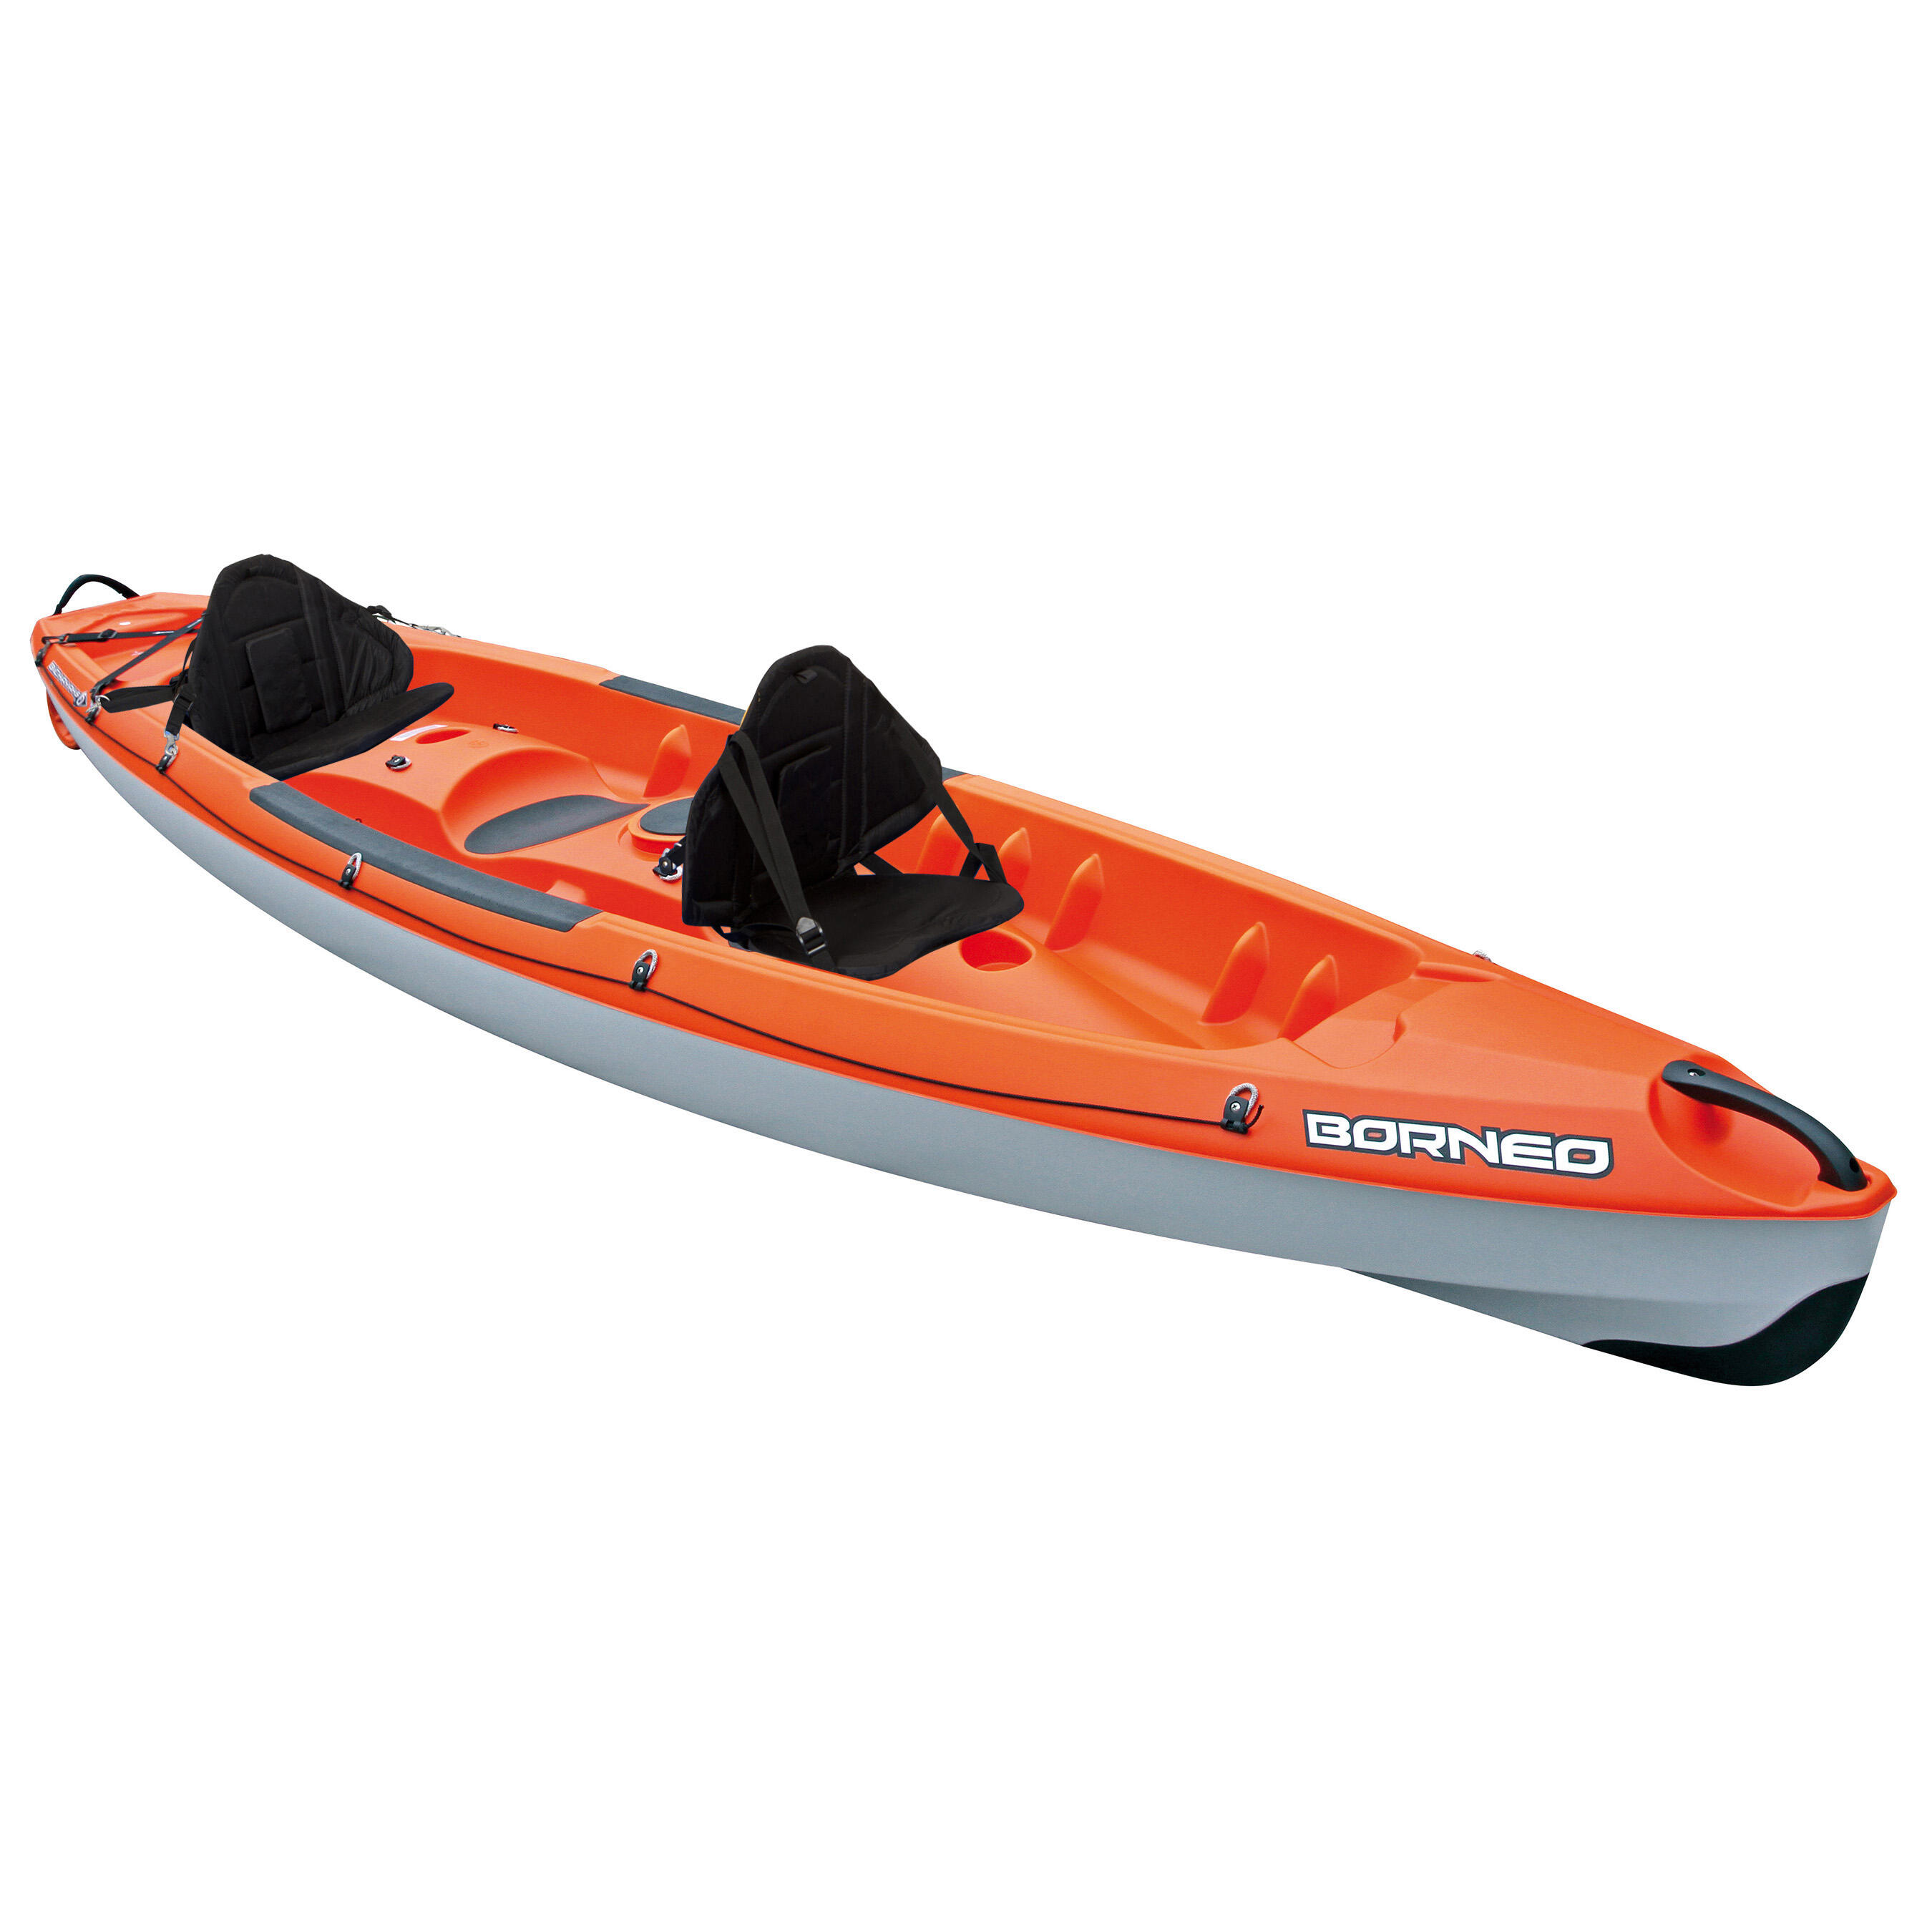 Kayaks | Kayak Shop | Inflatable 